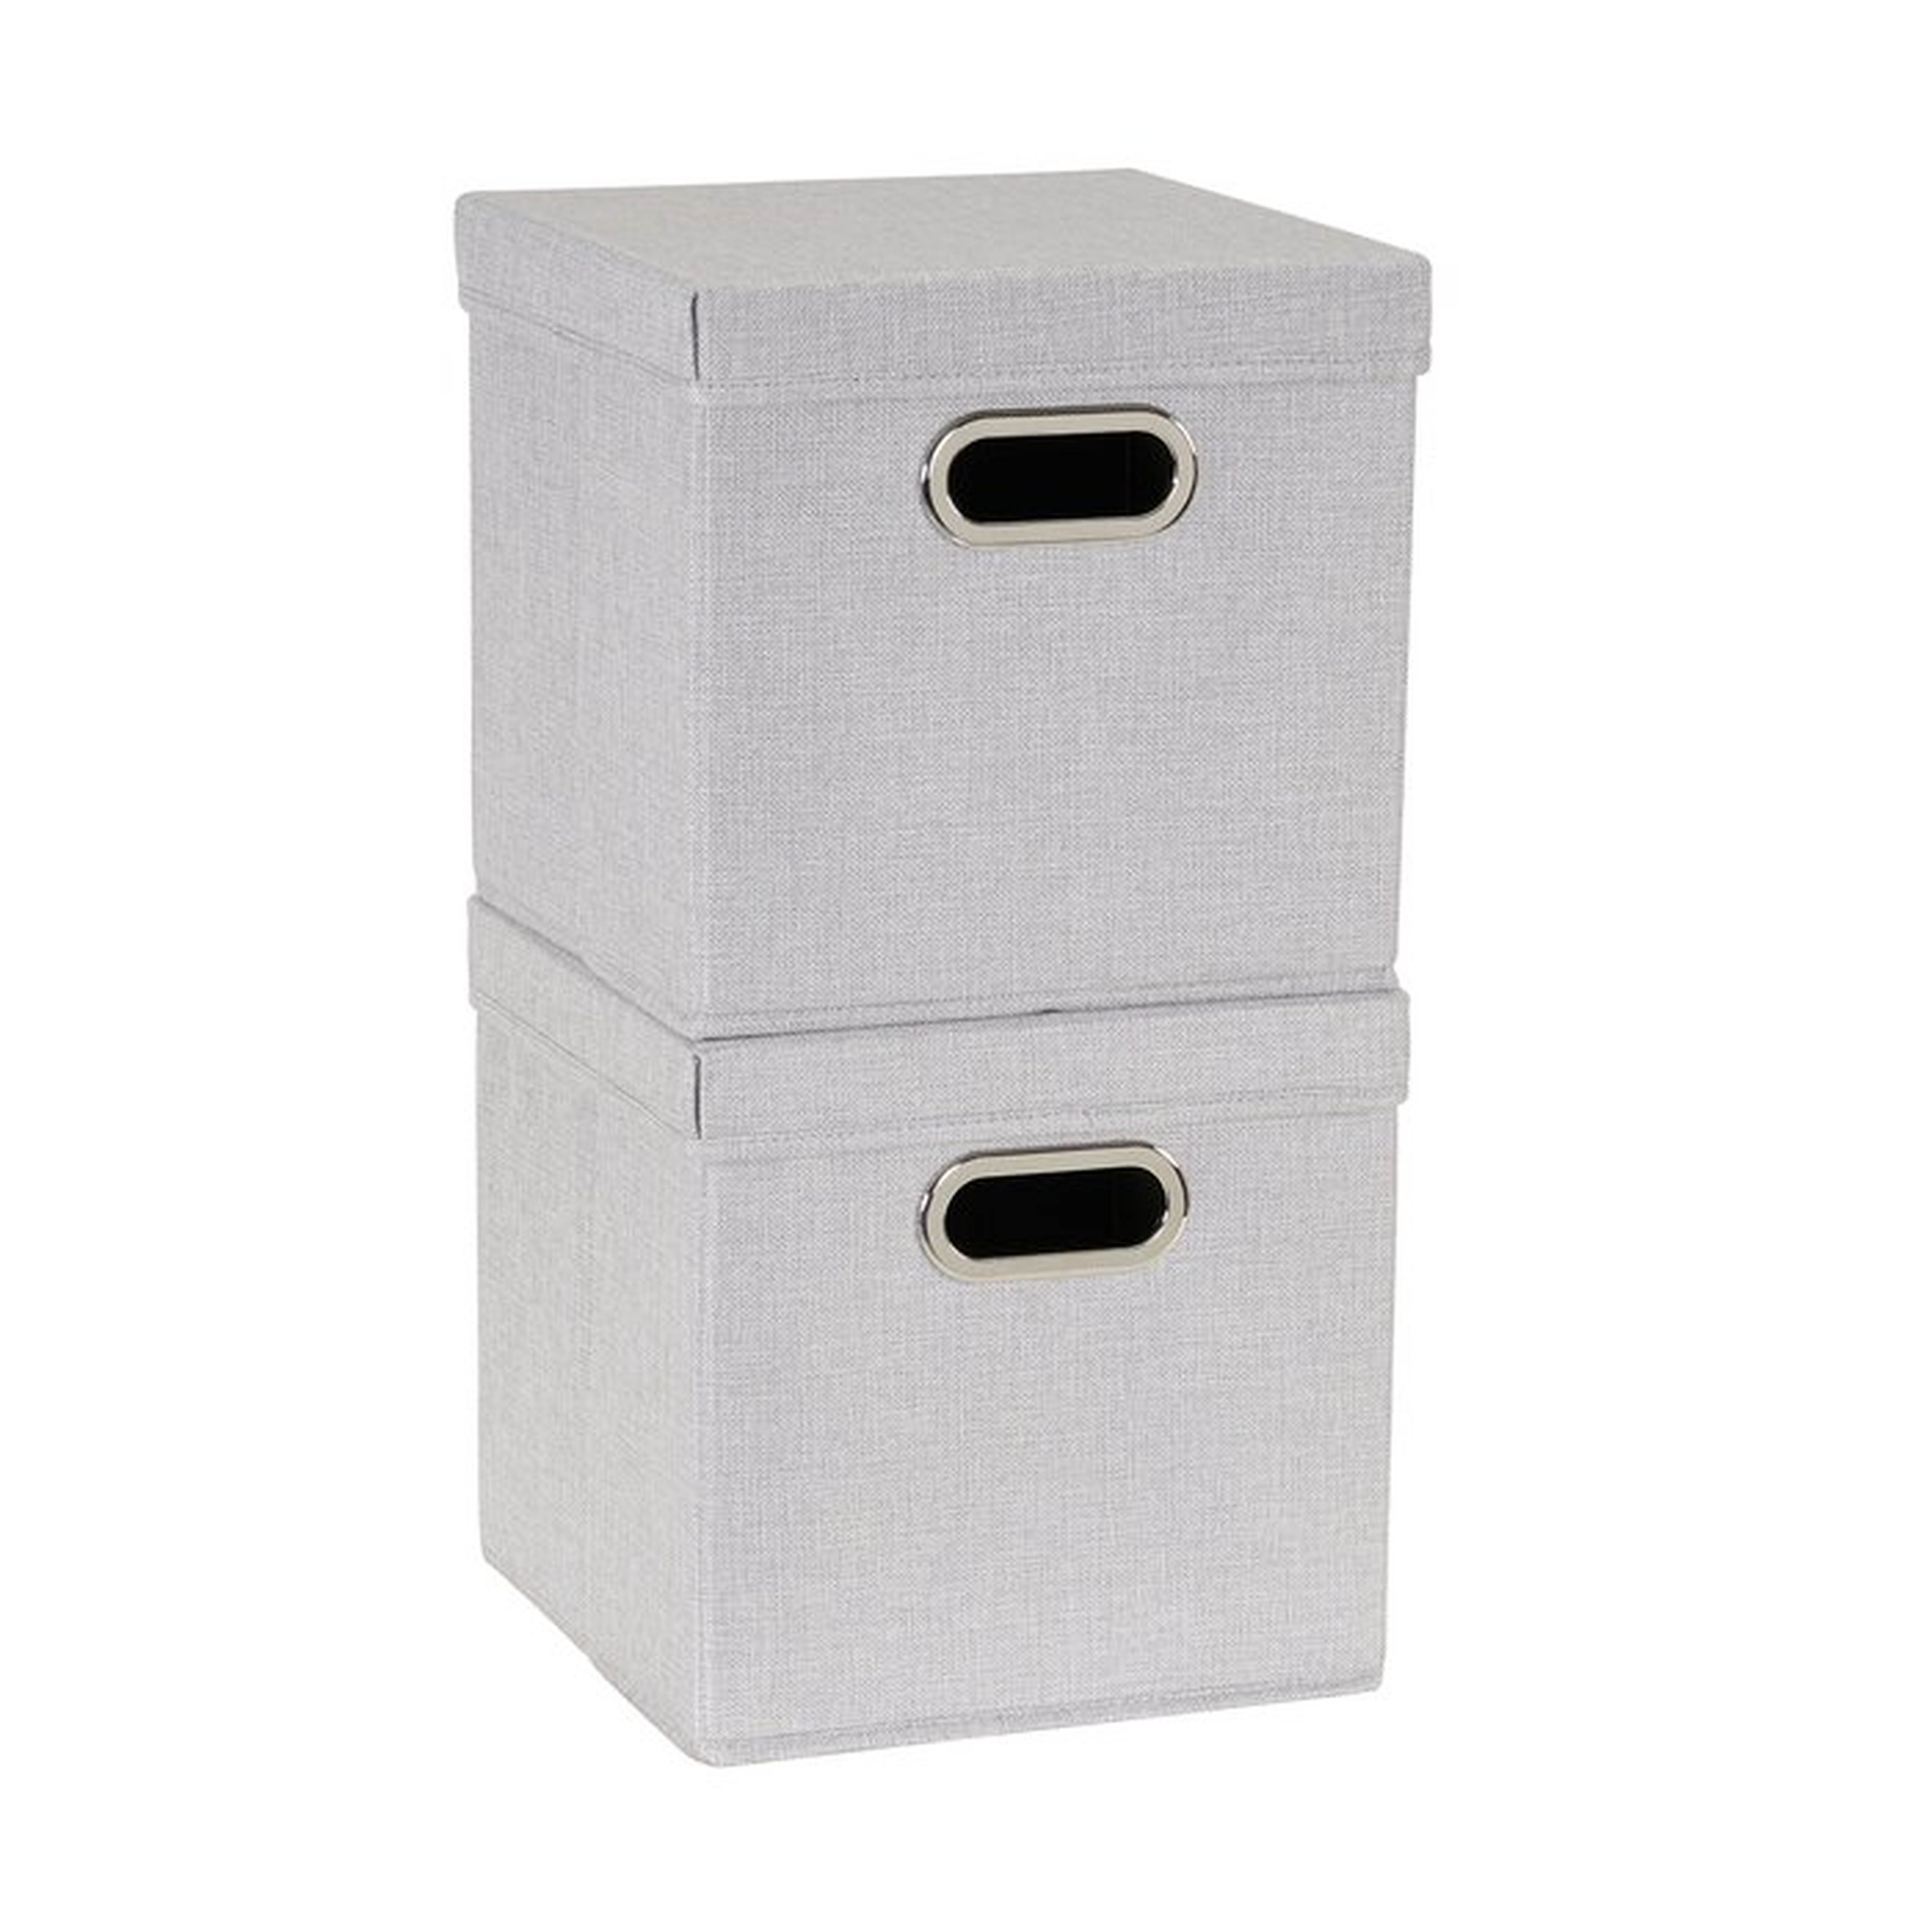 Fabric box Set of 2 - Wayfair